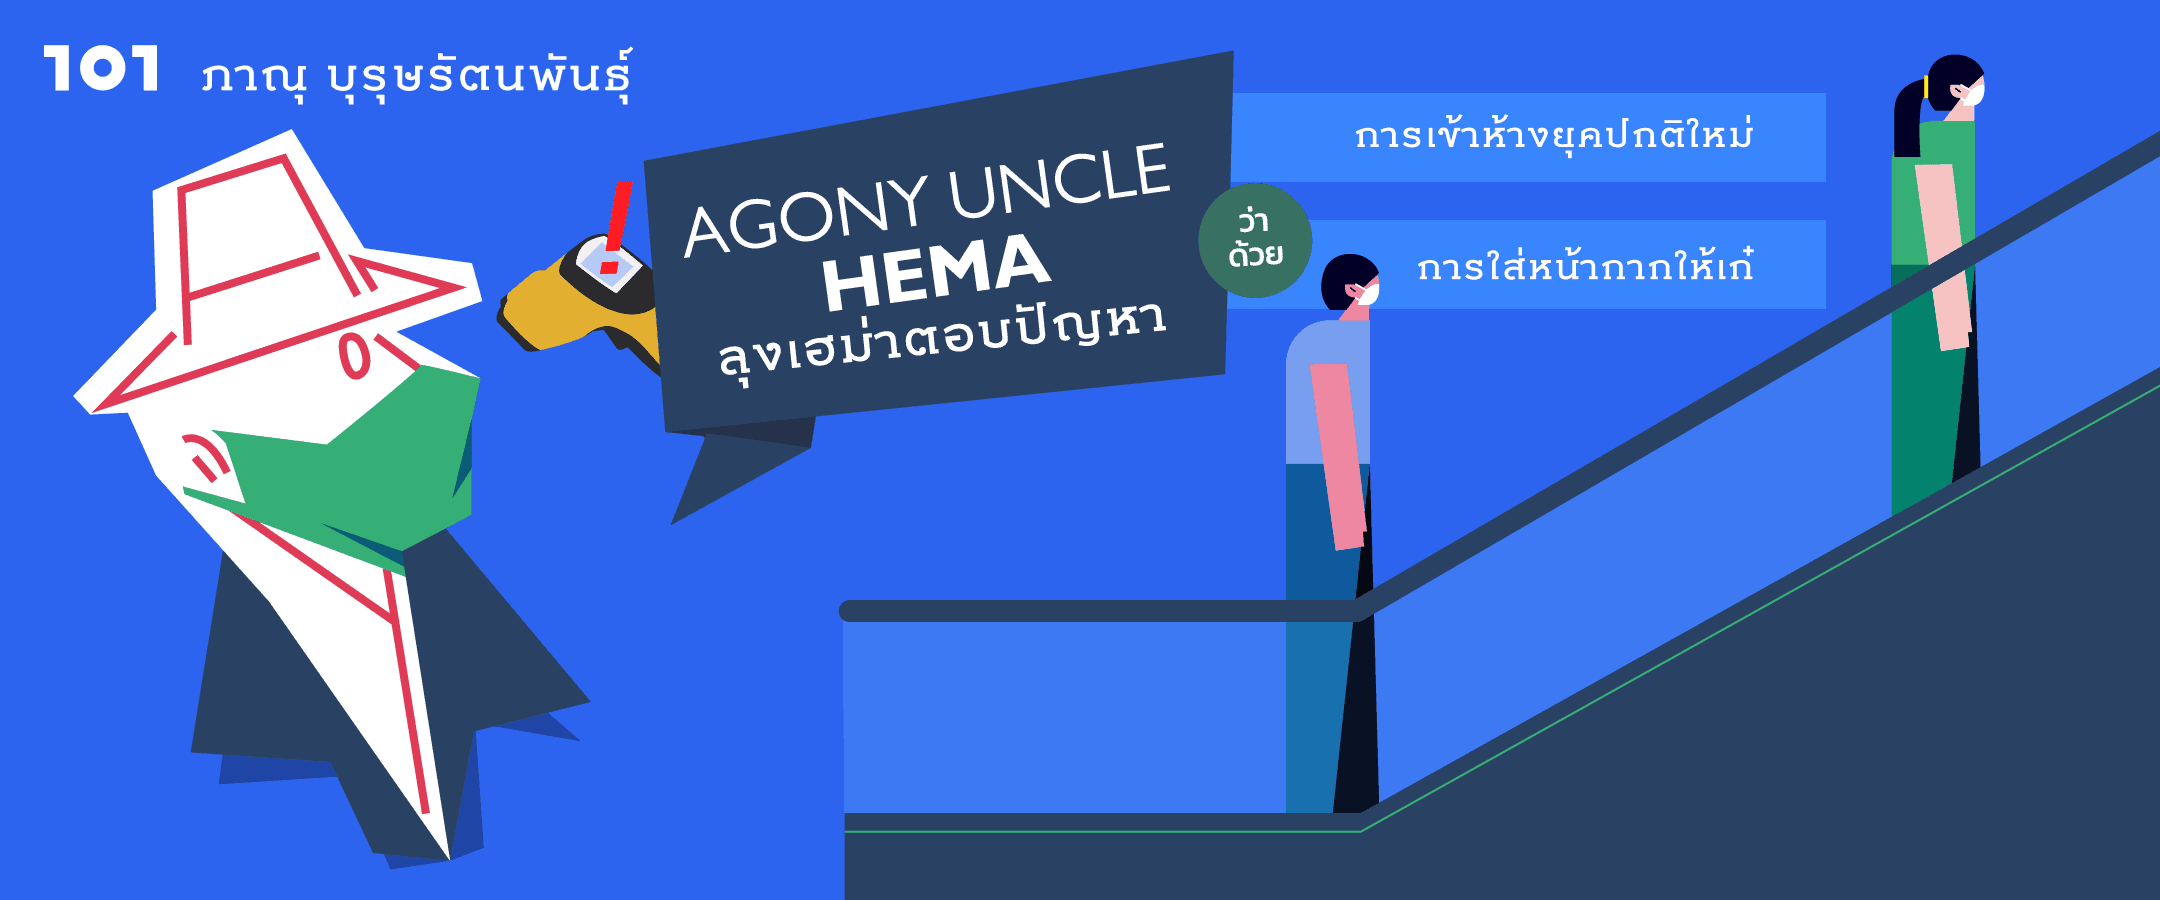 Agony Uncle* Hema ลุงเฮม่าตอบปัญหา เรื่องการเข้าห้างยุคปกติใหม่ และการใส่หน้ากากให้เก๋